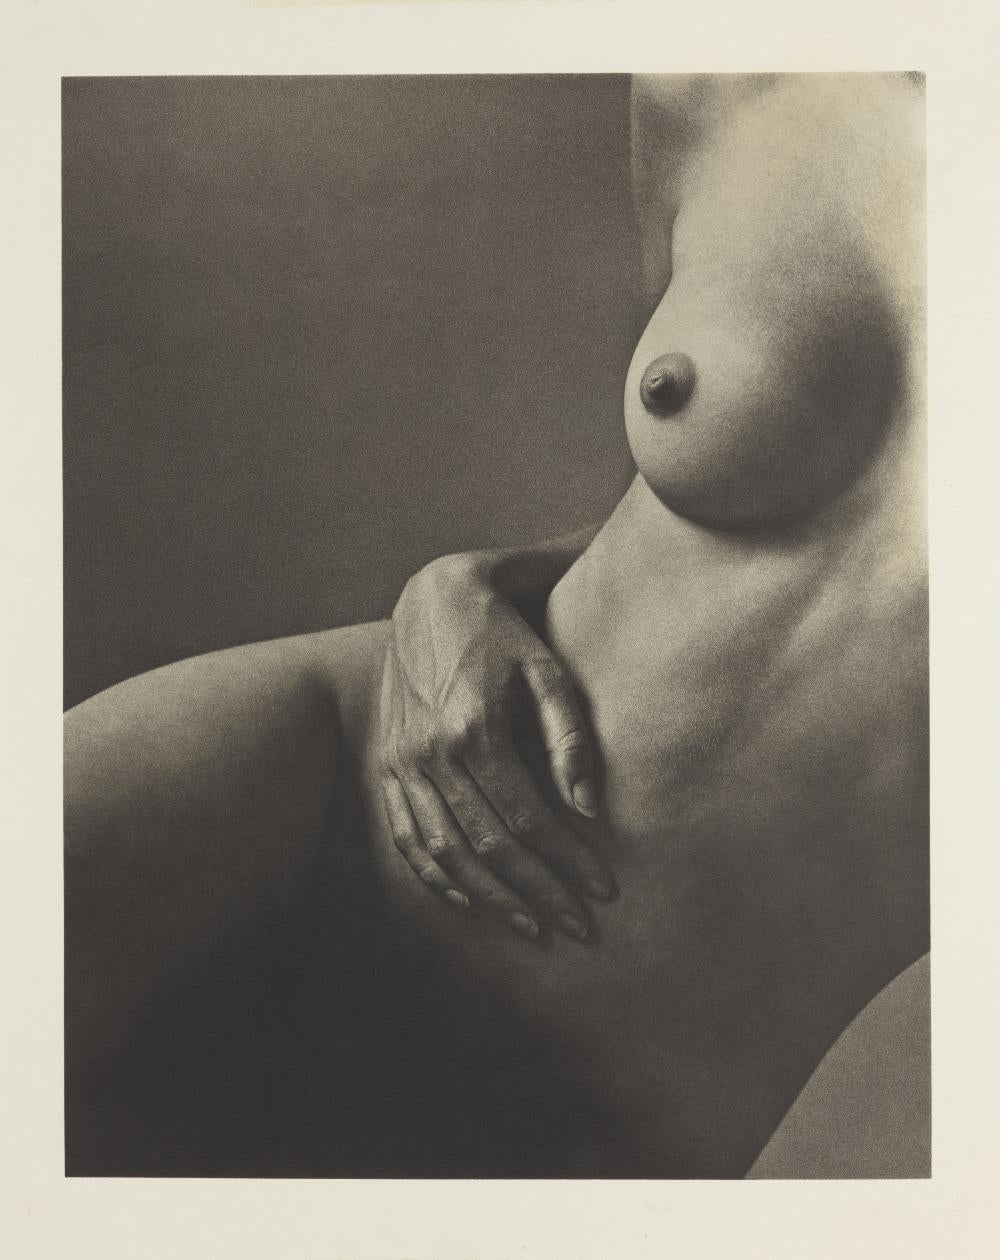 Figura Desnuda Pecho y Mano Impresión en Platino Paladio sobre Tejido por Artista Británico - Print de Malcolm Pasley